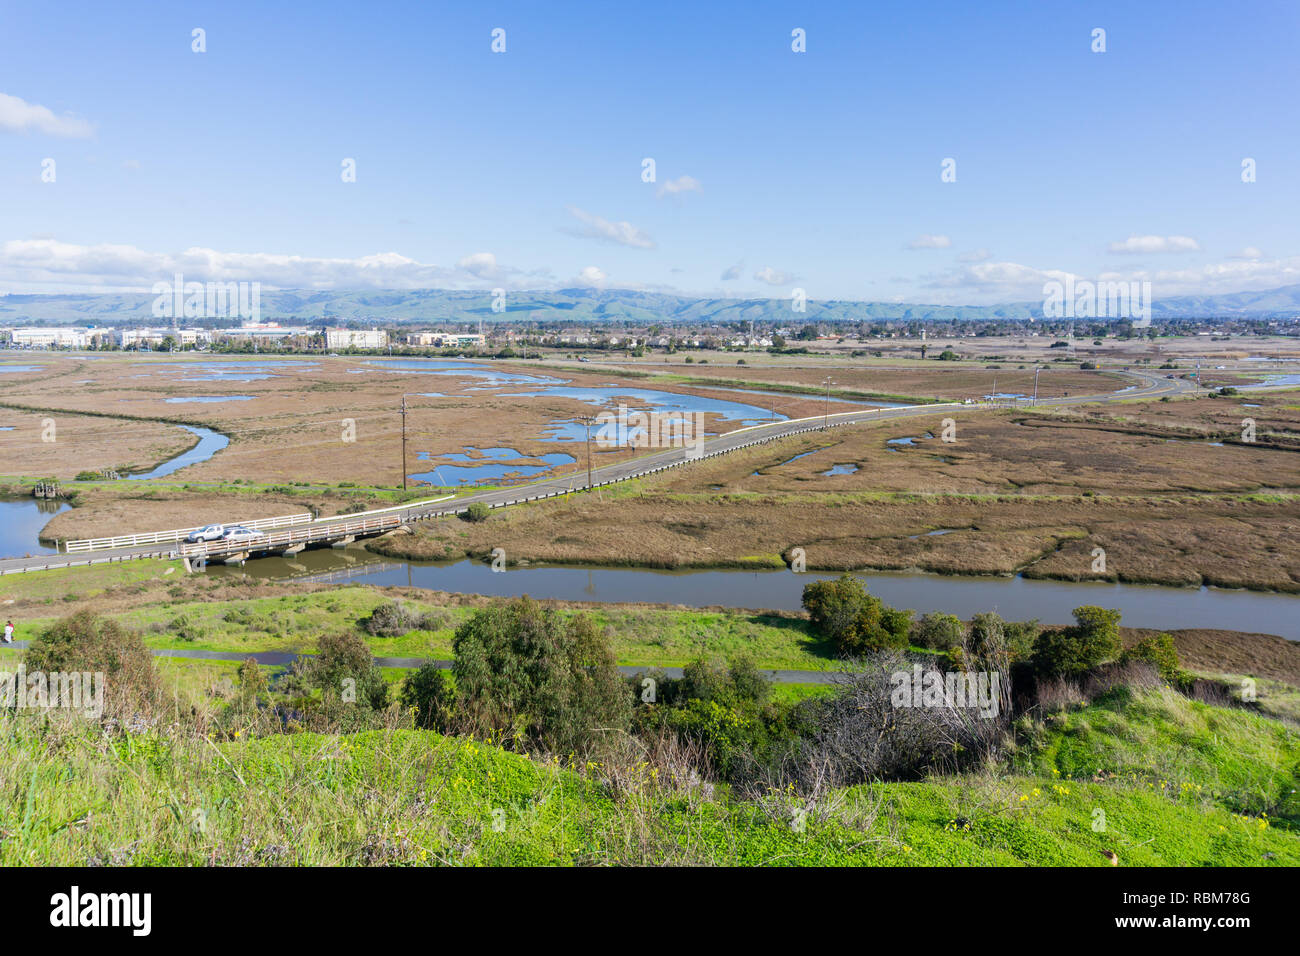 Les zones humides de Don Edwards Wildlife Refuge, Fremont, baie de San Francisco, Californie Banque D'Images